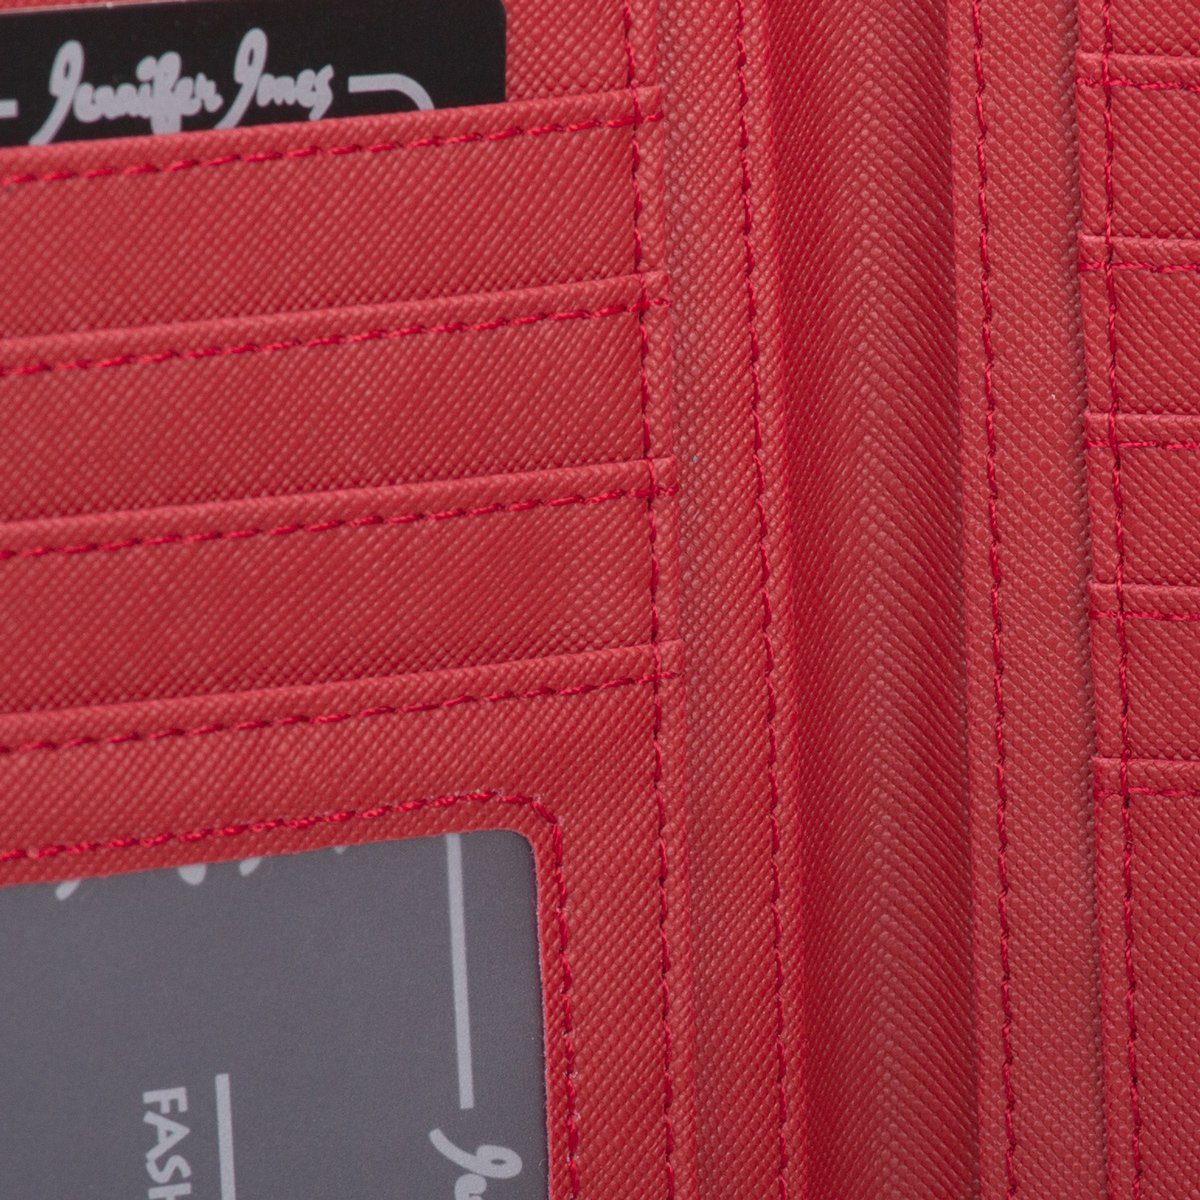 Jennifer Jones Geldbörse, Geldbörse Reißverschluss Damen mit klappbar Geldbeutel Portemonnaie rot